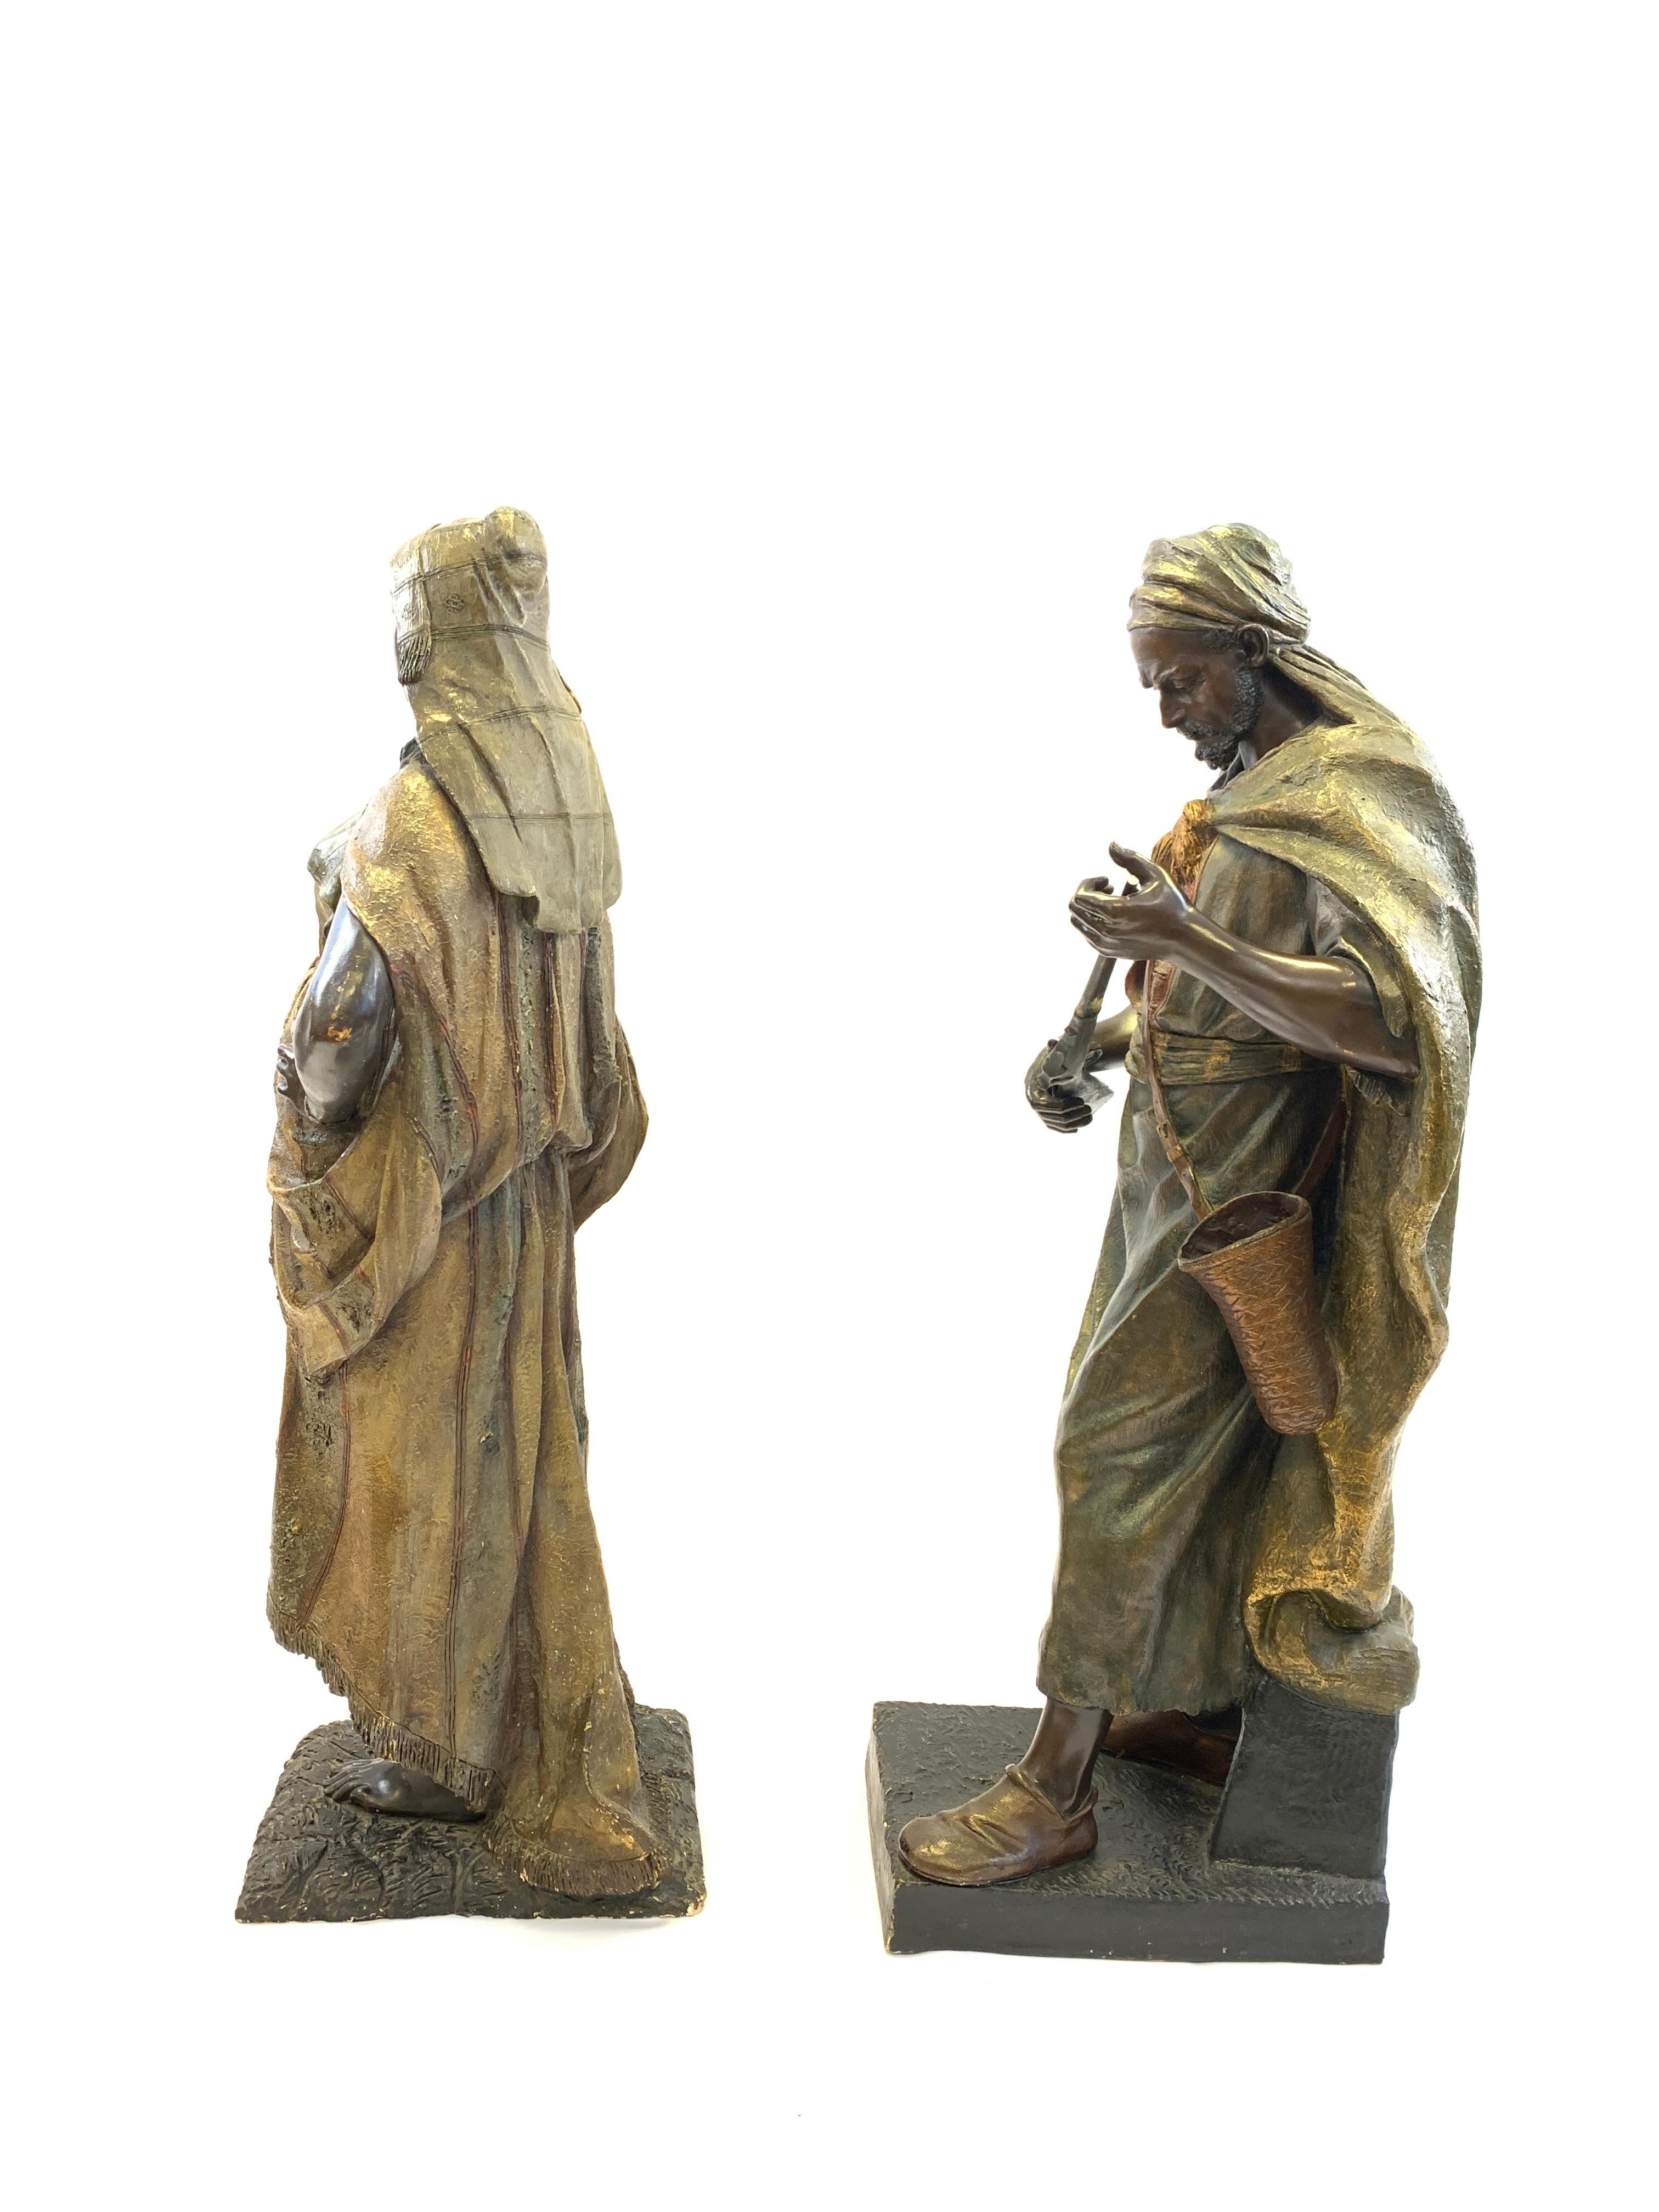 Paire de figures en terre cuite polychrome représentant une dame orientale et un soldat arabe par Friedrich Goldscheider, XIXe siècle.

Impressionnante statuette en terre cuite peinte à froid représentant un soldat arabe et une jeune femme